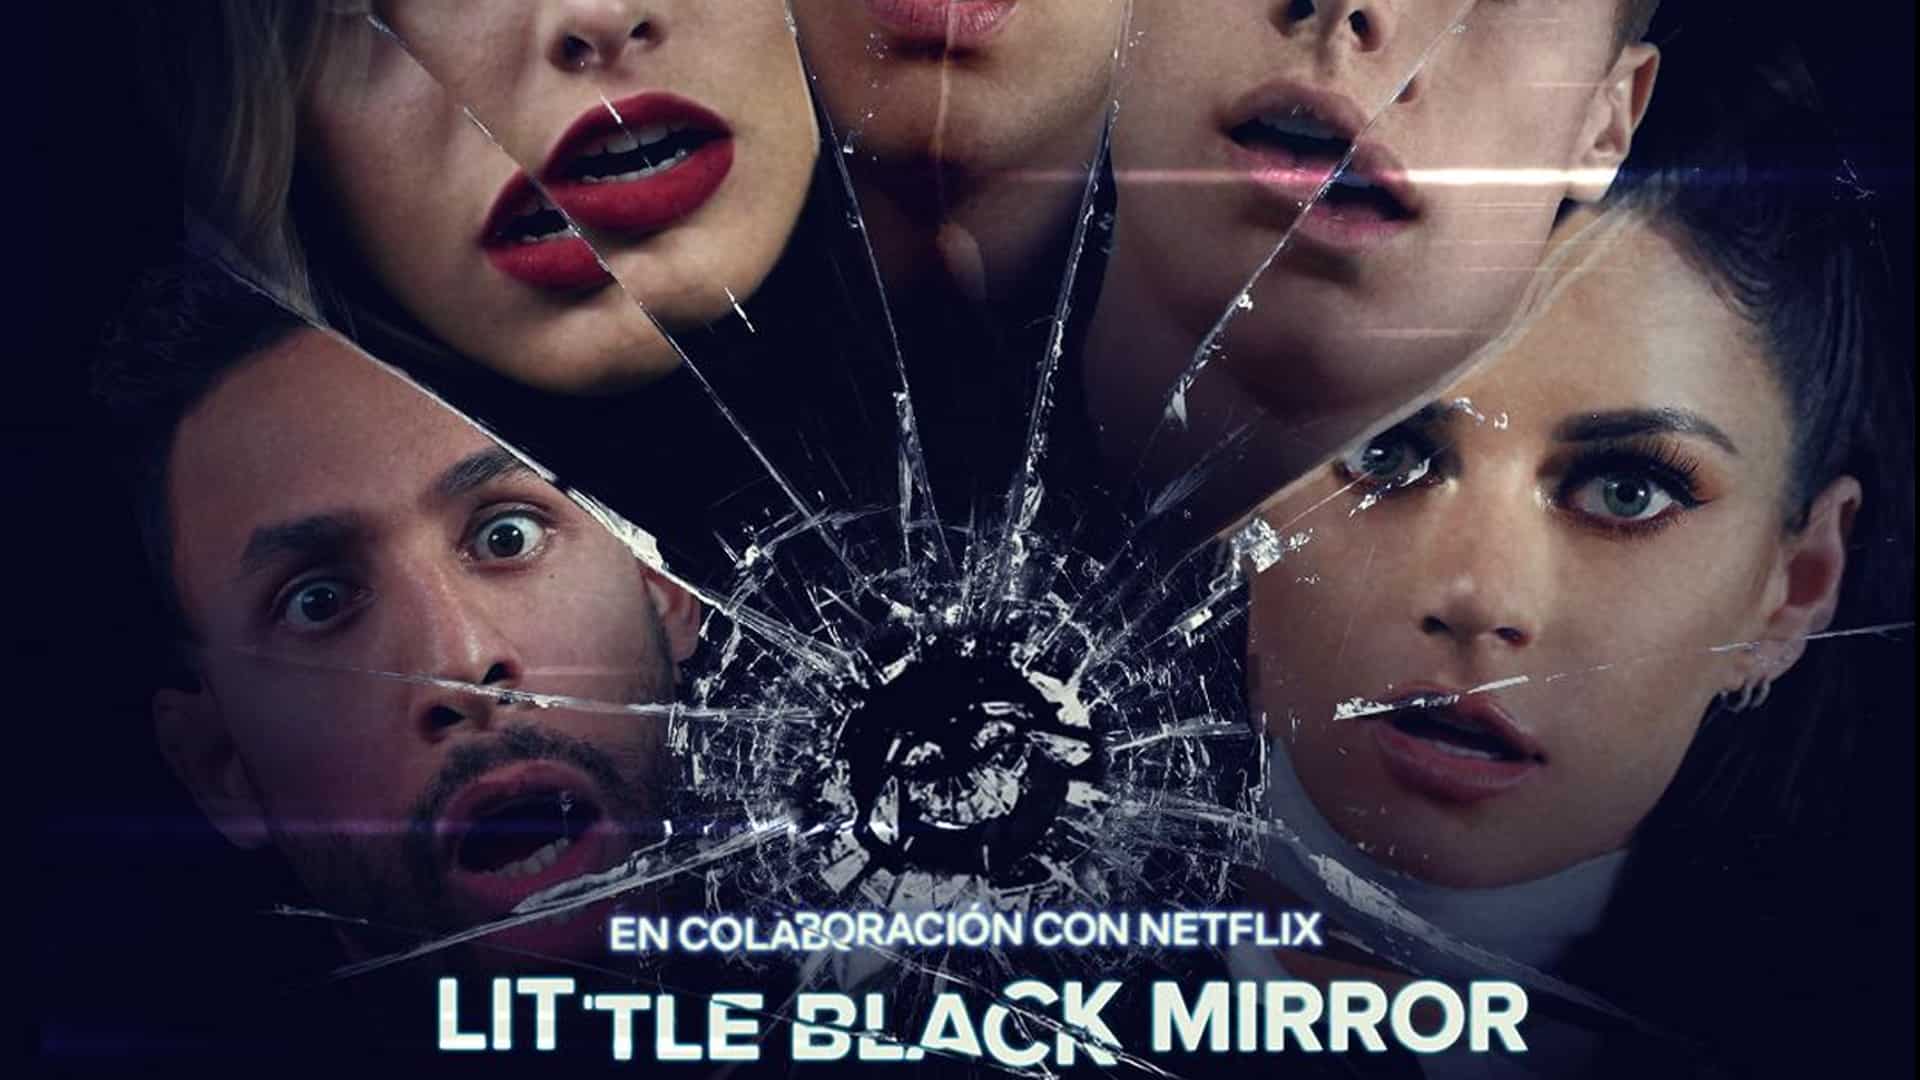 Little Black Mirror: Youtube ospiterà tre corti spin-off di Black Mirror